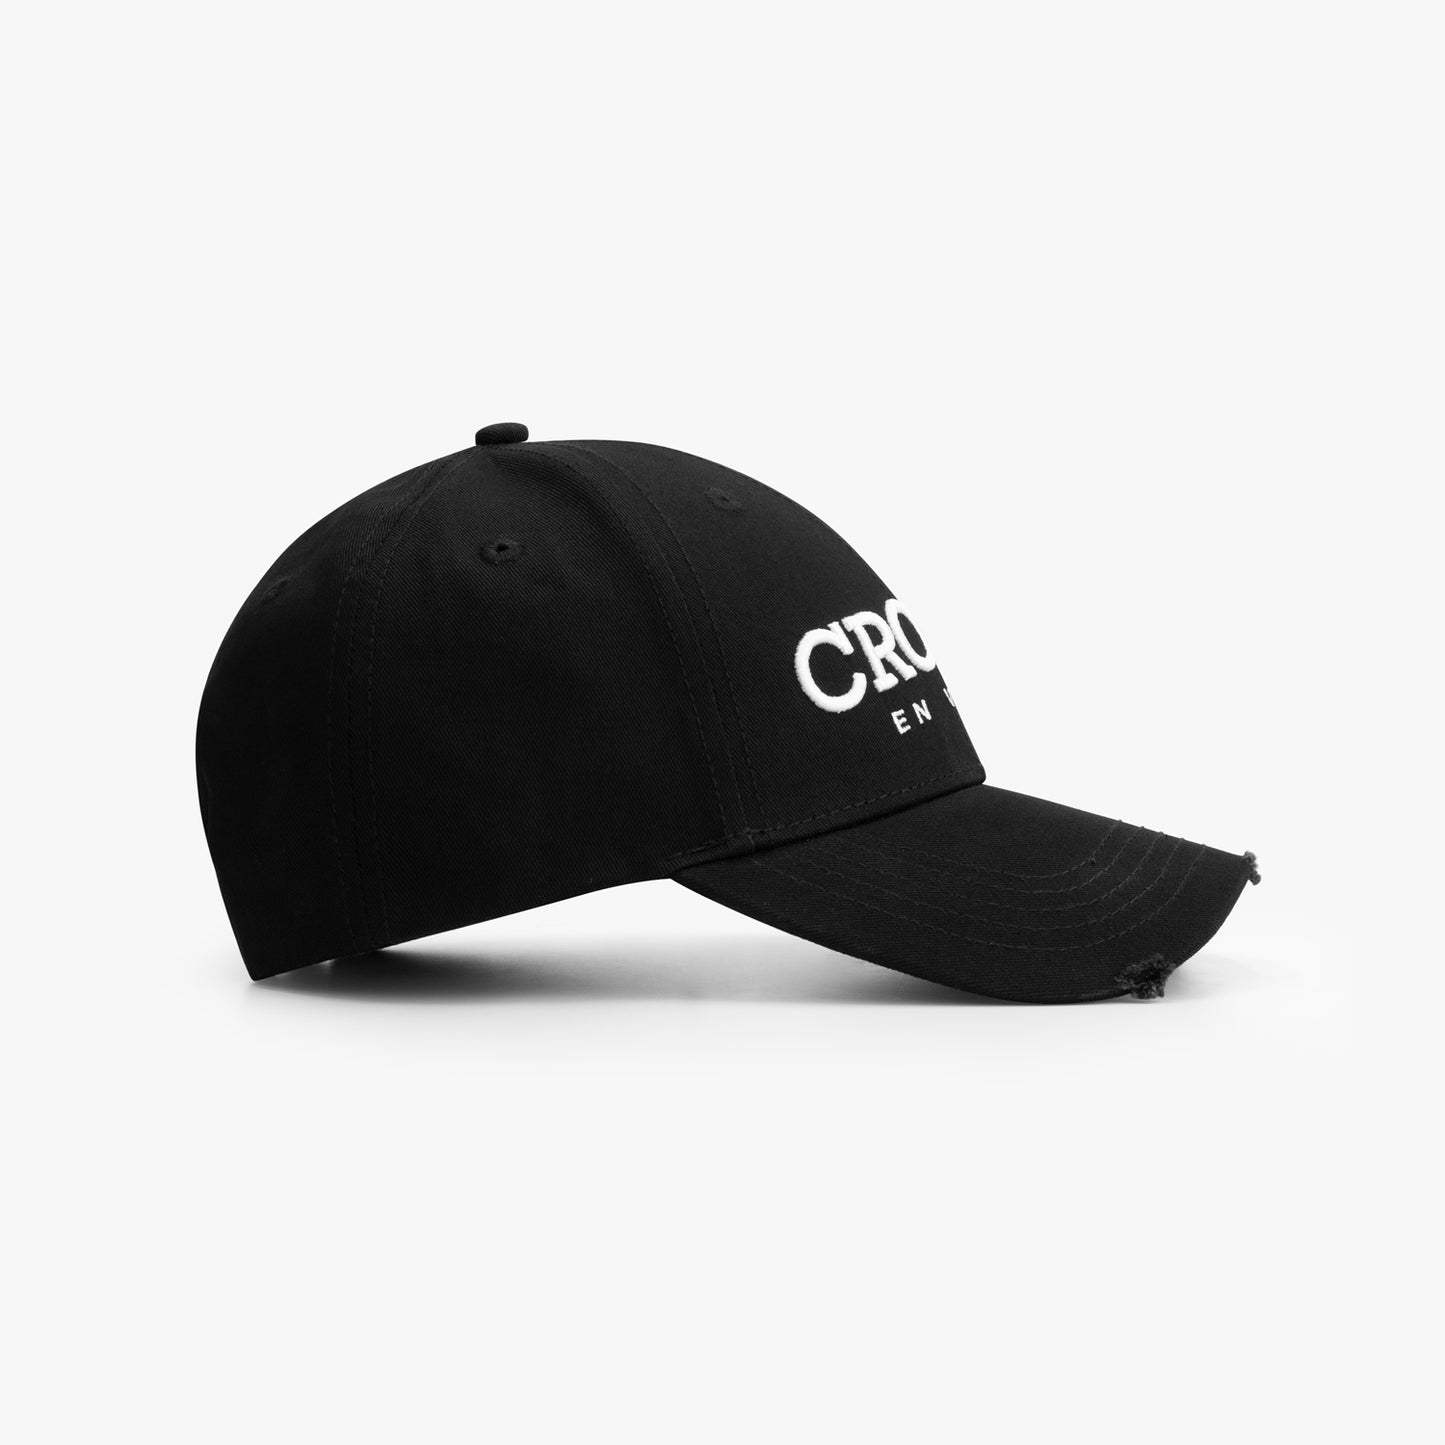 CROYEZ ABSTRACT CAP - BLACK/WHITE